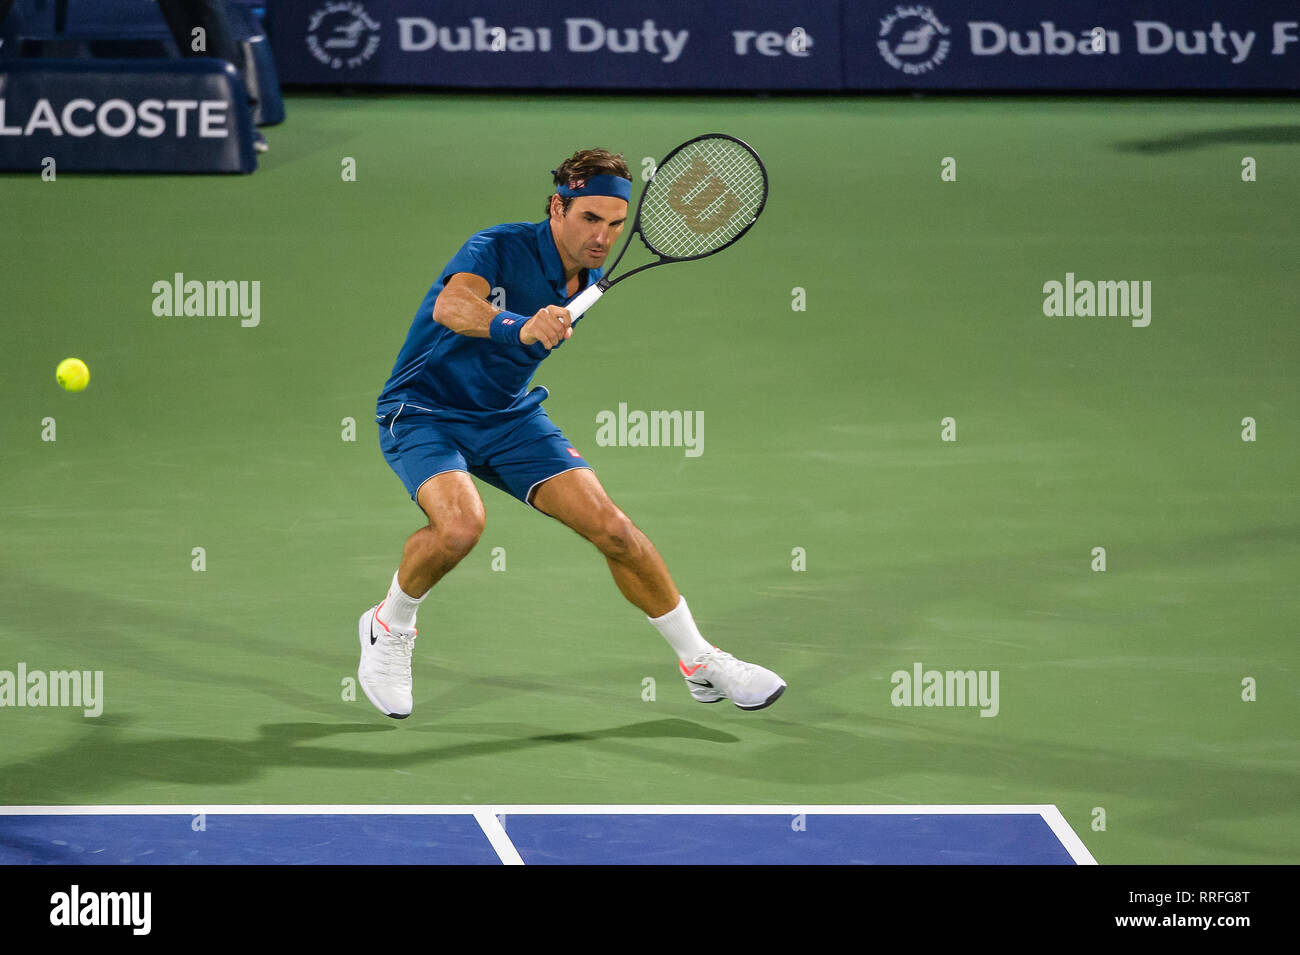 Dubaï, Émirats arabes unis. 25 février 2019. L'ancien no. 1 de la suisse  Roger Federer sur son chemin vers la victoire contre Igor Andreev au 2019  Dubai Duty Free Tennis Championships 2019.